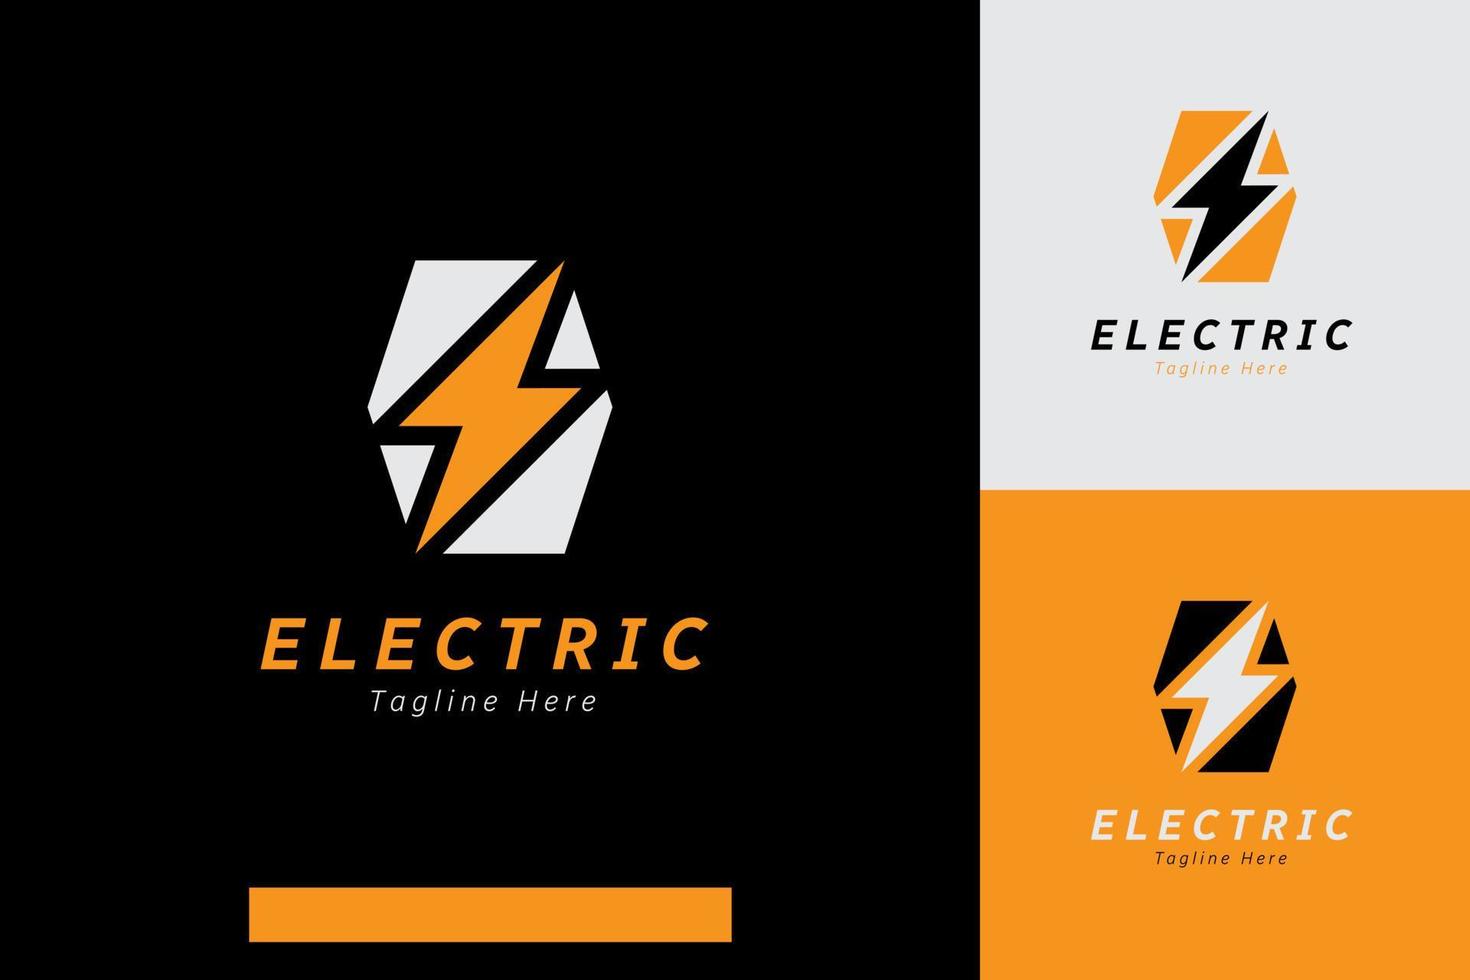 conjunto do relâmpago trovão elétrico energia logotipo vetor Projeto modelos com diferente cor estilos